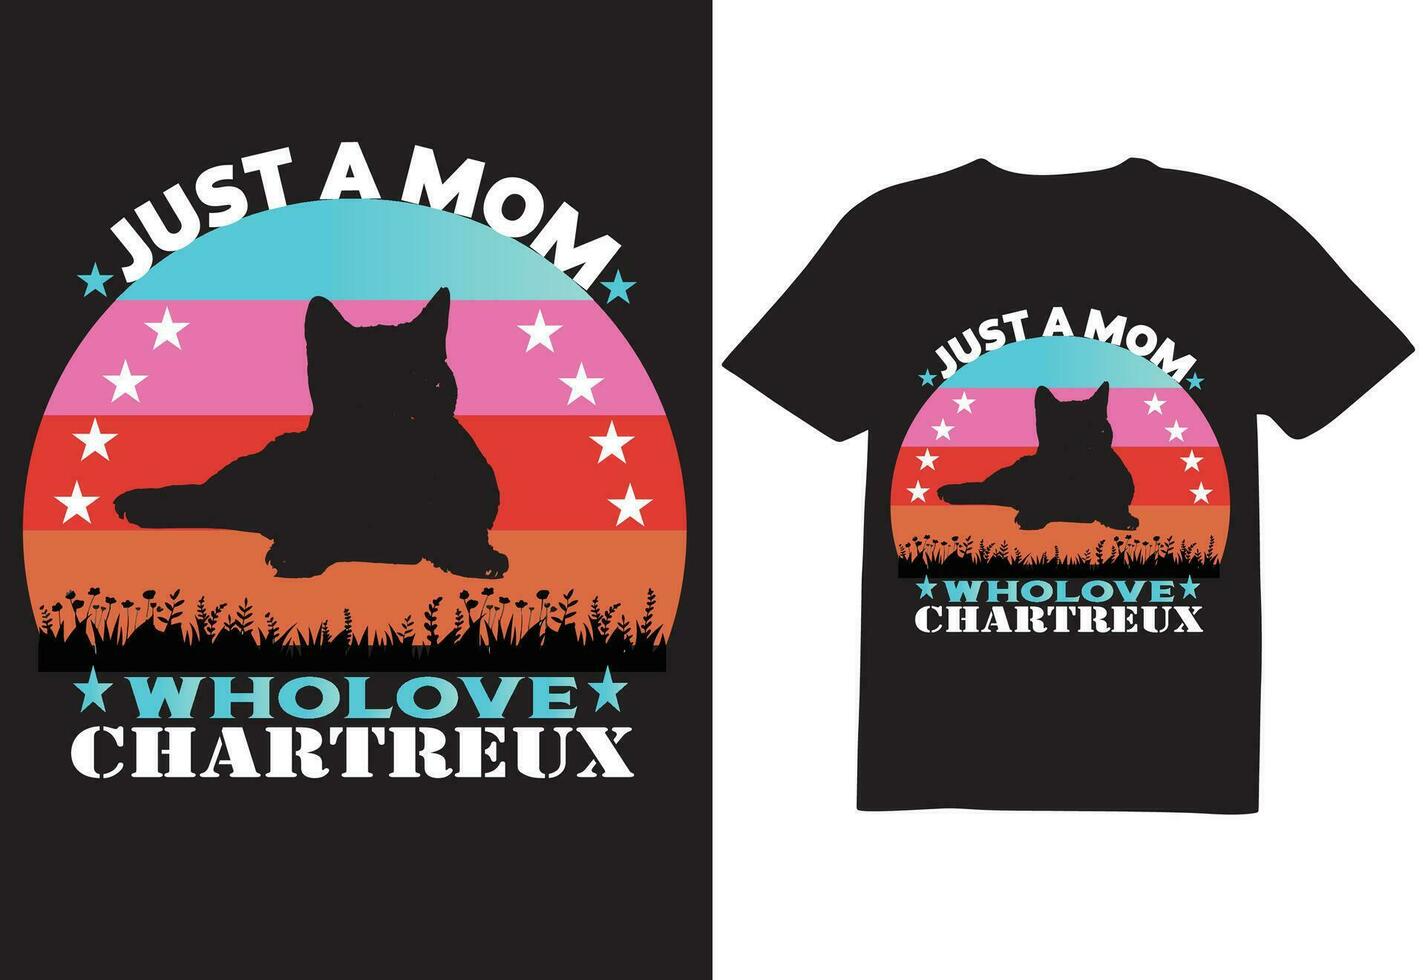 just a mom cat T-shirt design vector